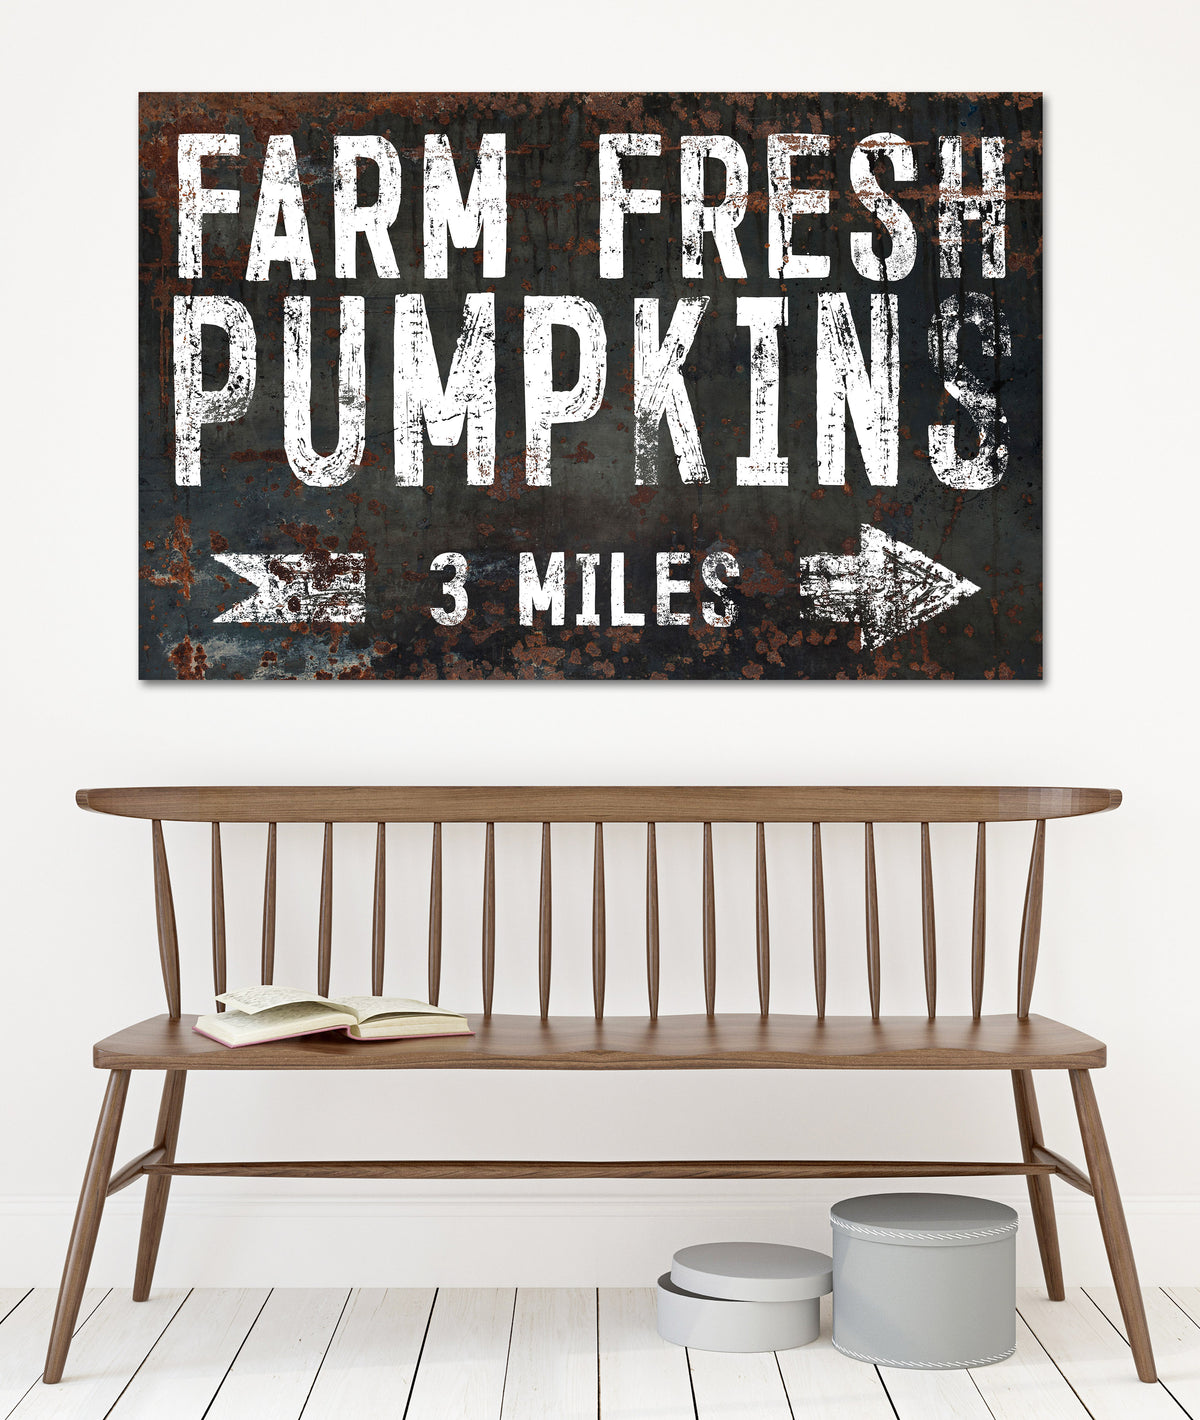 Black Farm Fresh Pumpkins Farmhouse Canvas Print - LC51